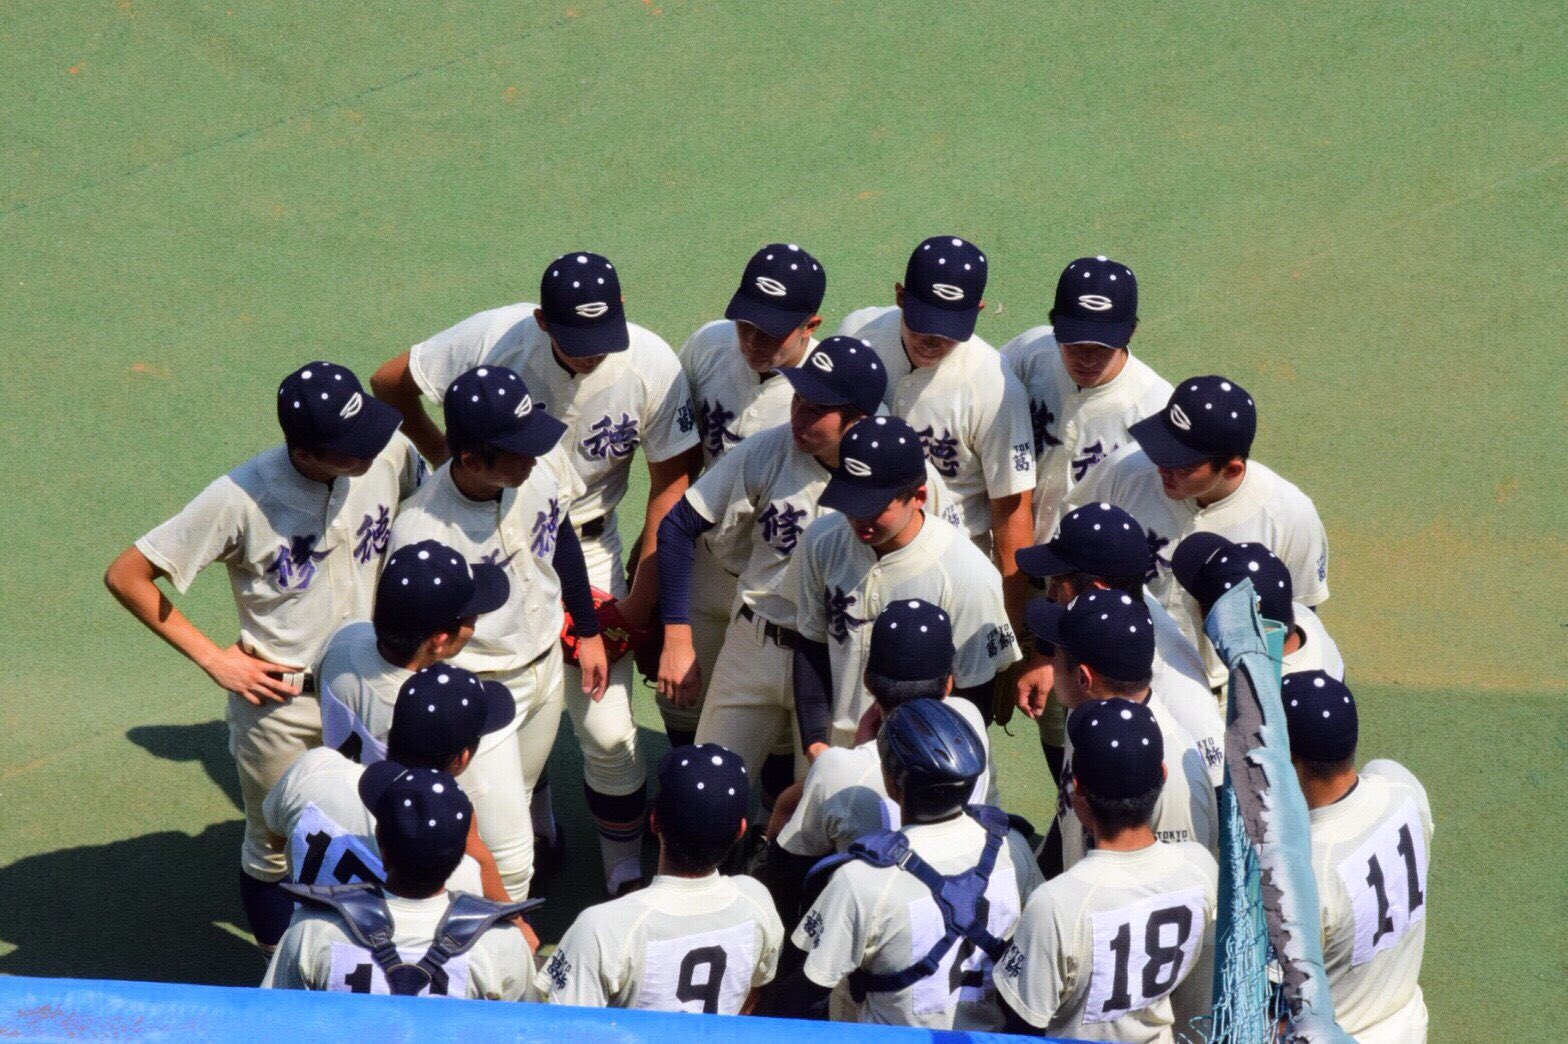 須藤孝介 今日で修徳高校野球部を引退しました このメンバーで野球できて本当に良かったです T Co Xfdwqcvxj2 Twitter